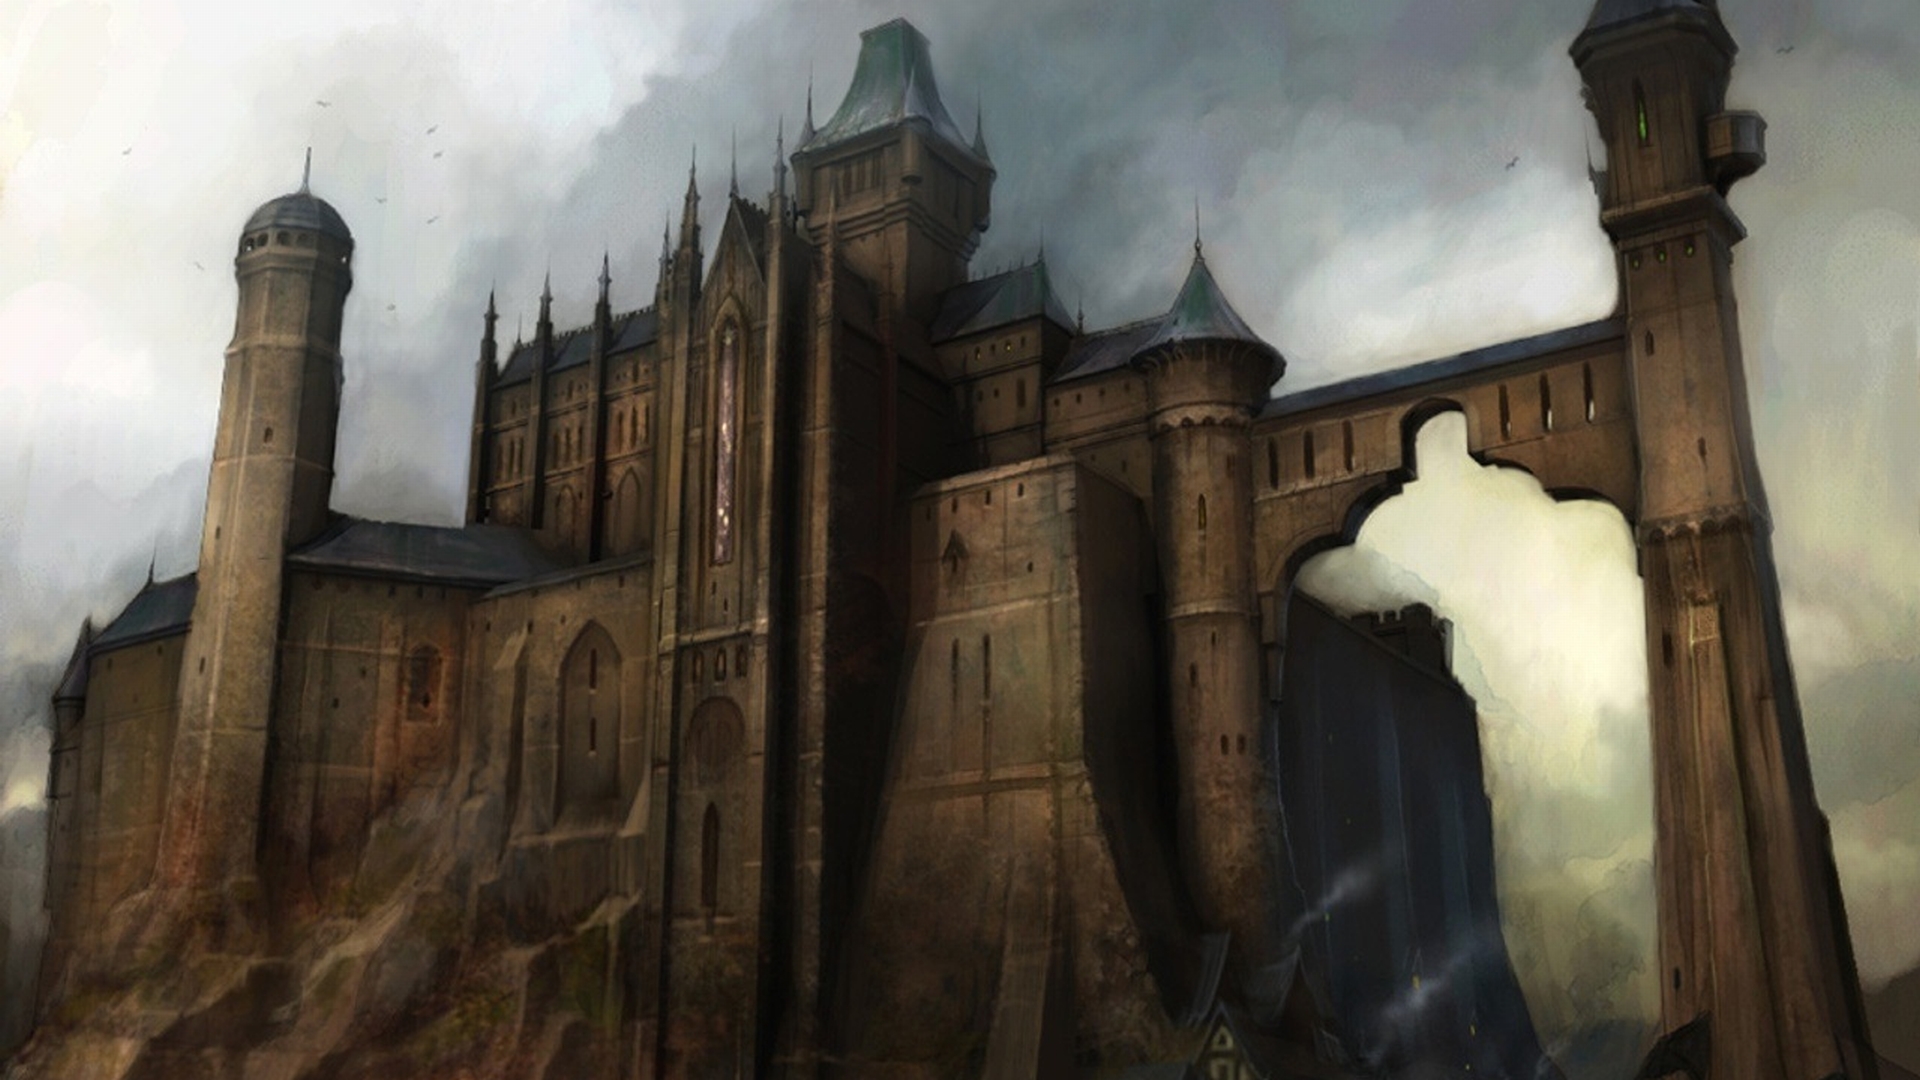 Fantasy castle - Fairfax Castle from Fable II - desktop wallpaper.